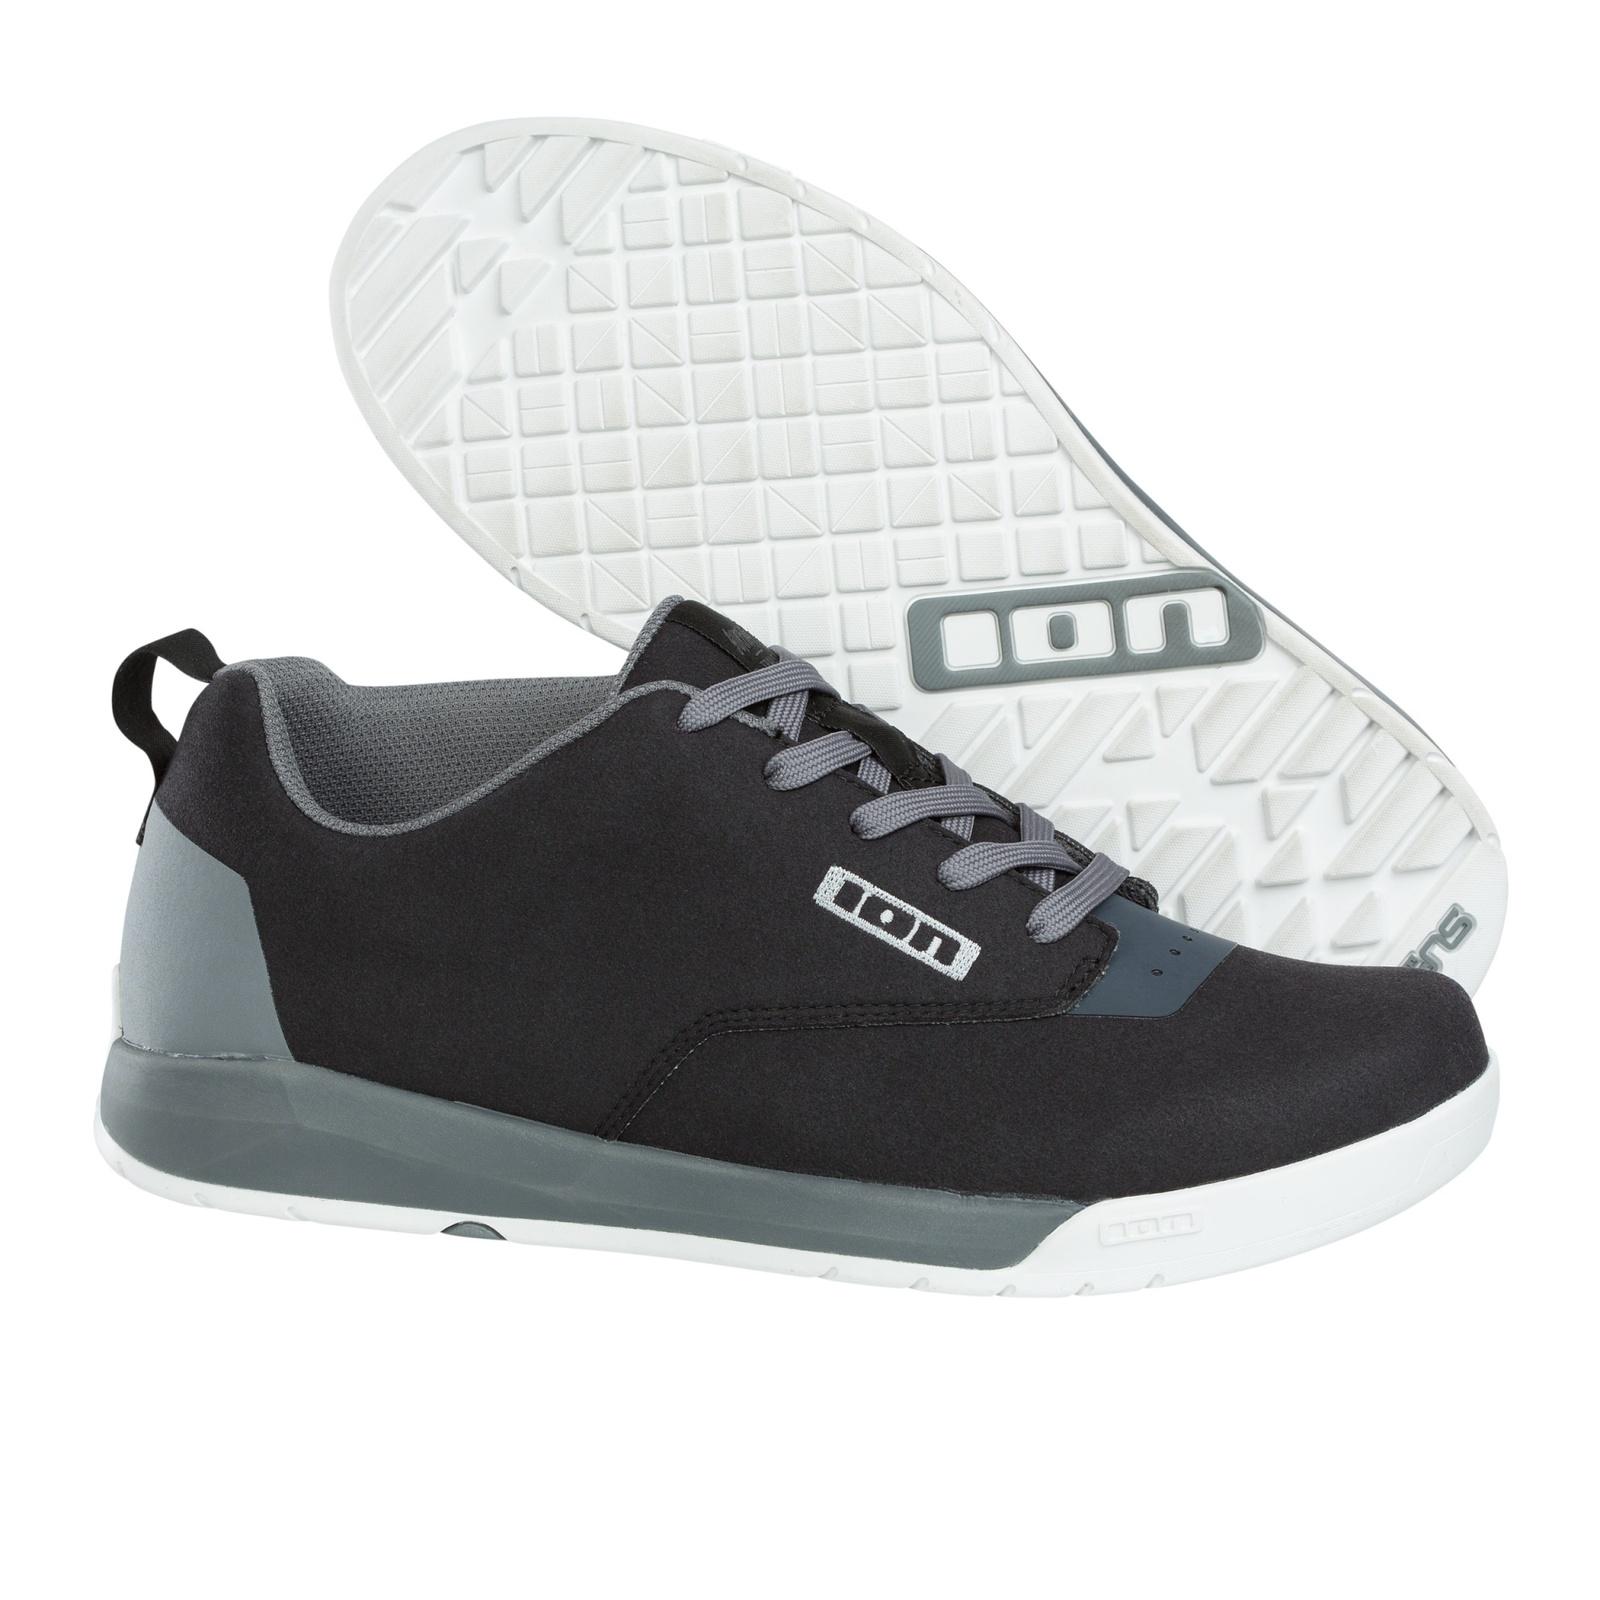 ION Raid II Trail/Enduro Flat Pedal Shoes